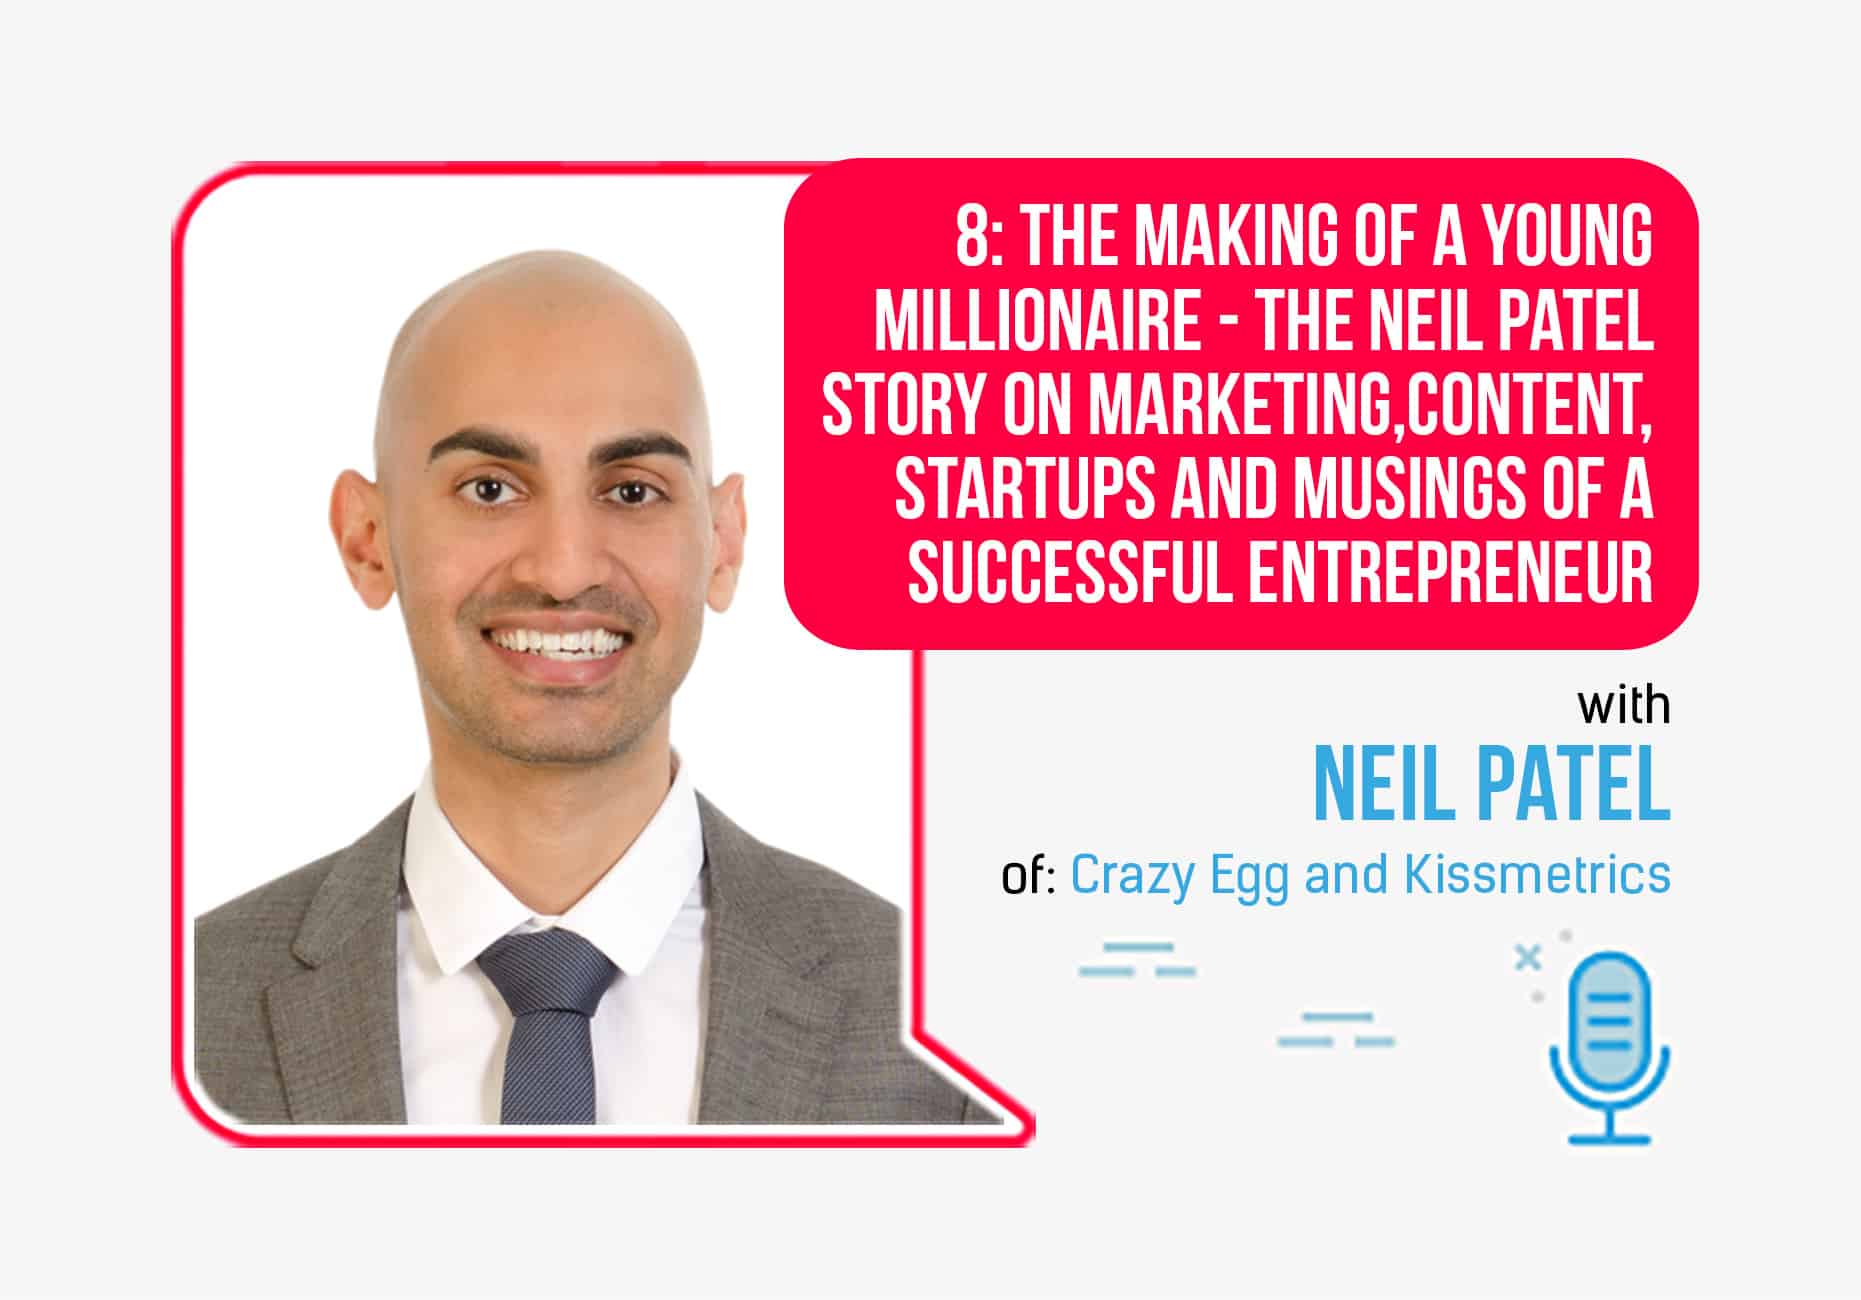 Neil Patel Business Ventures